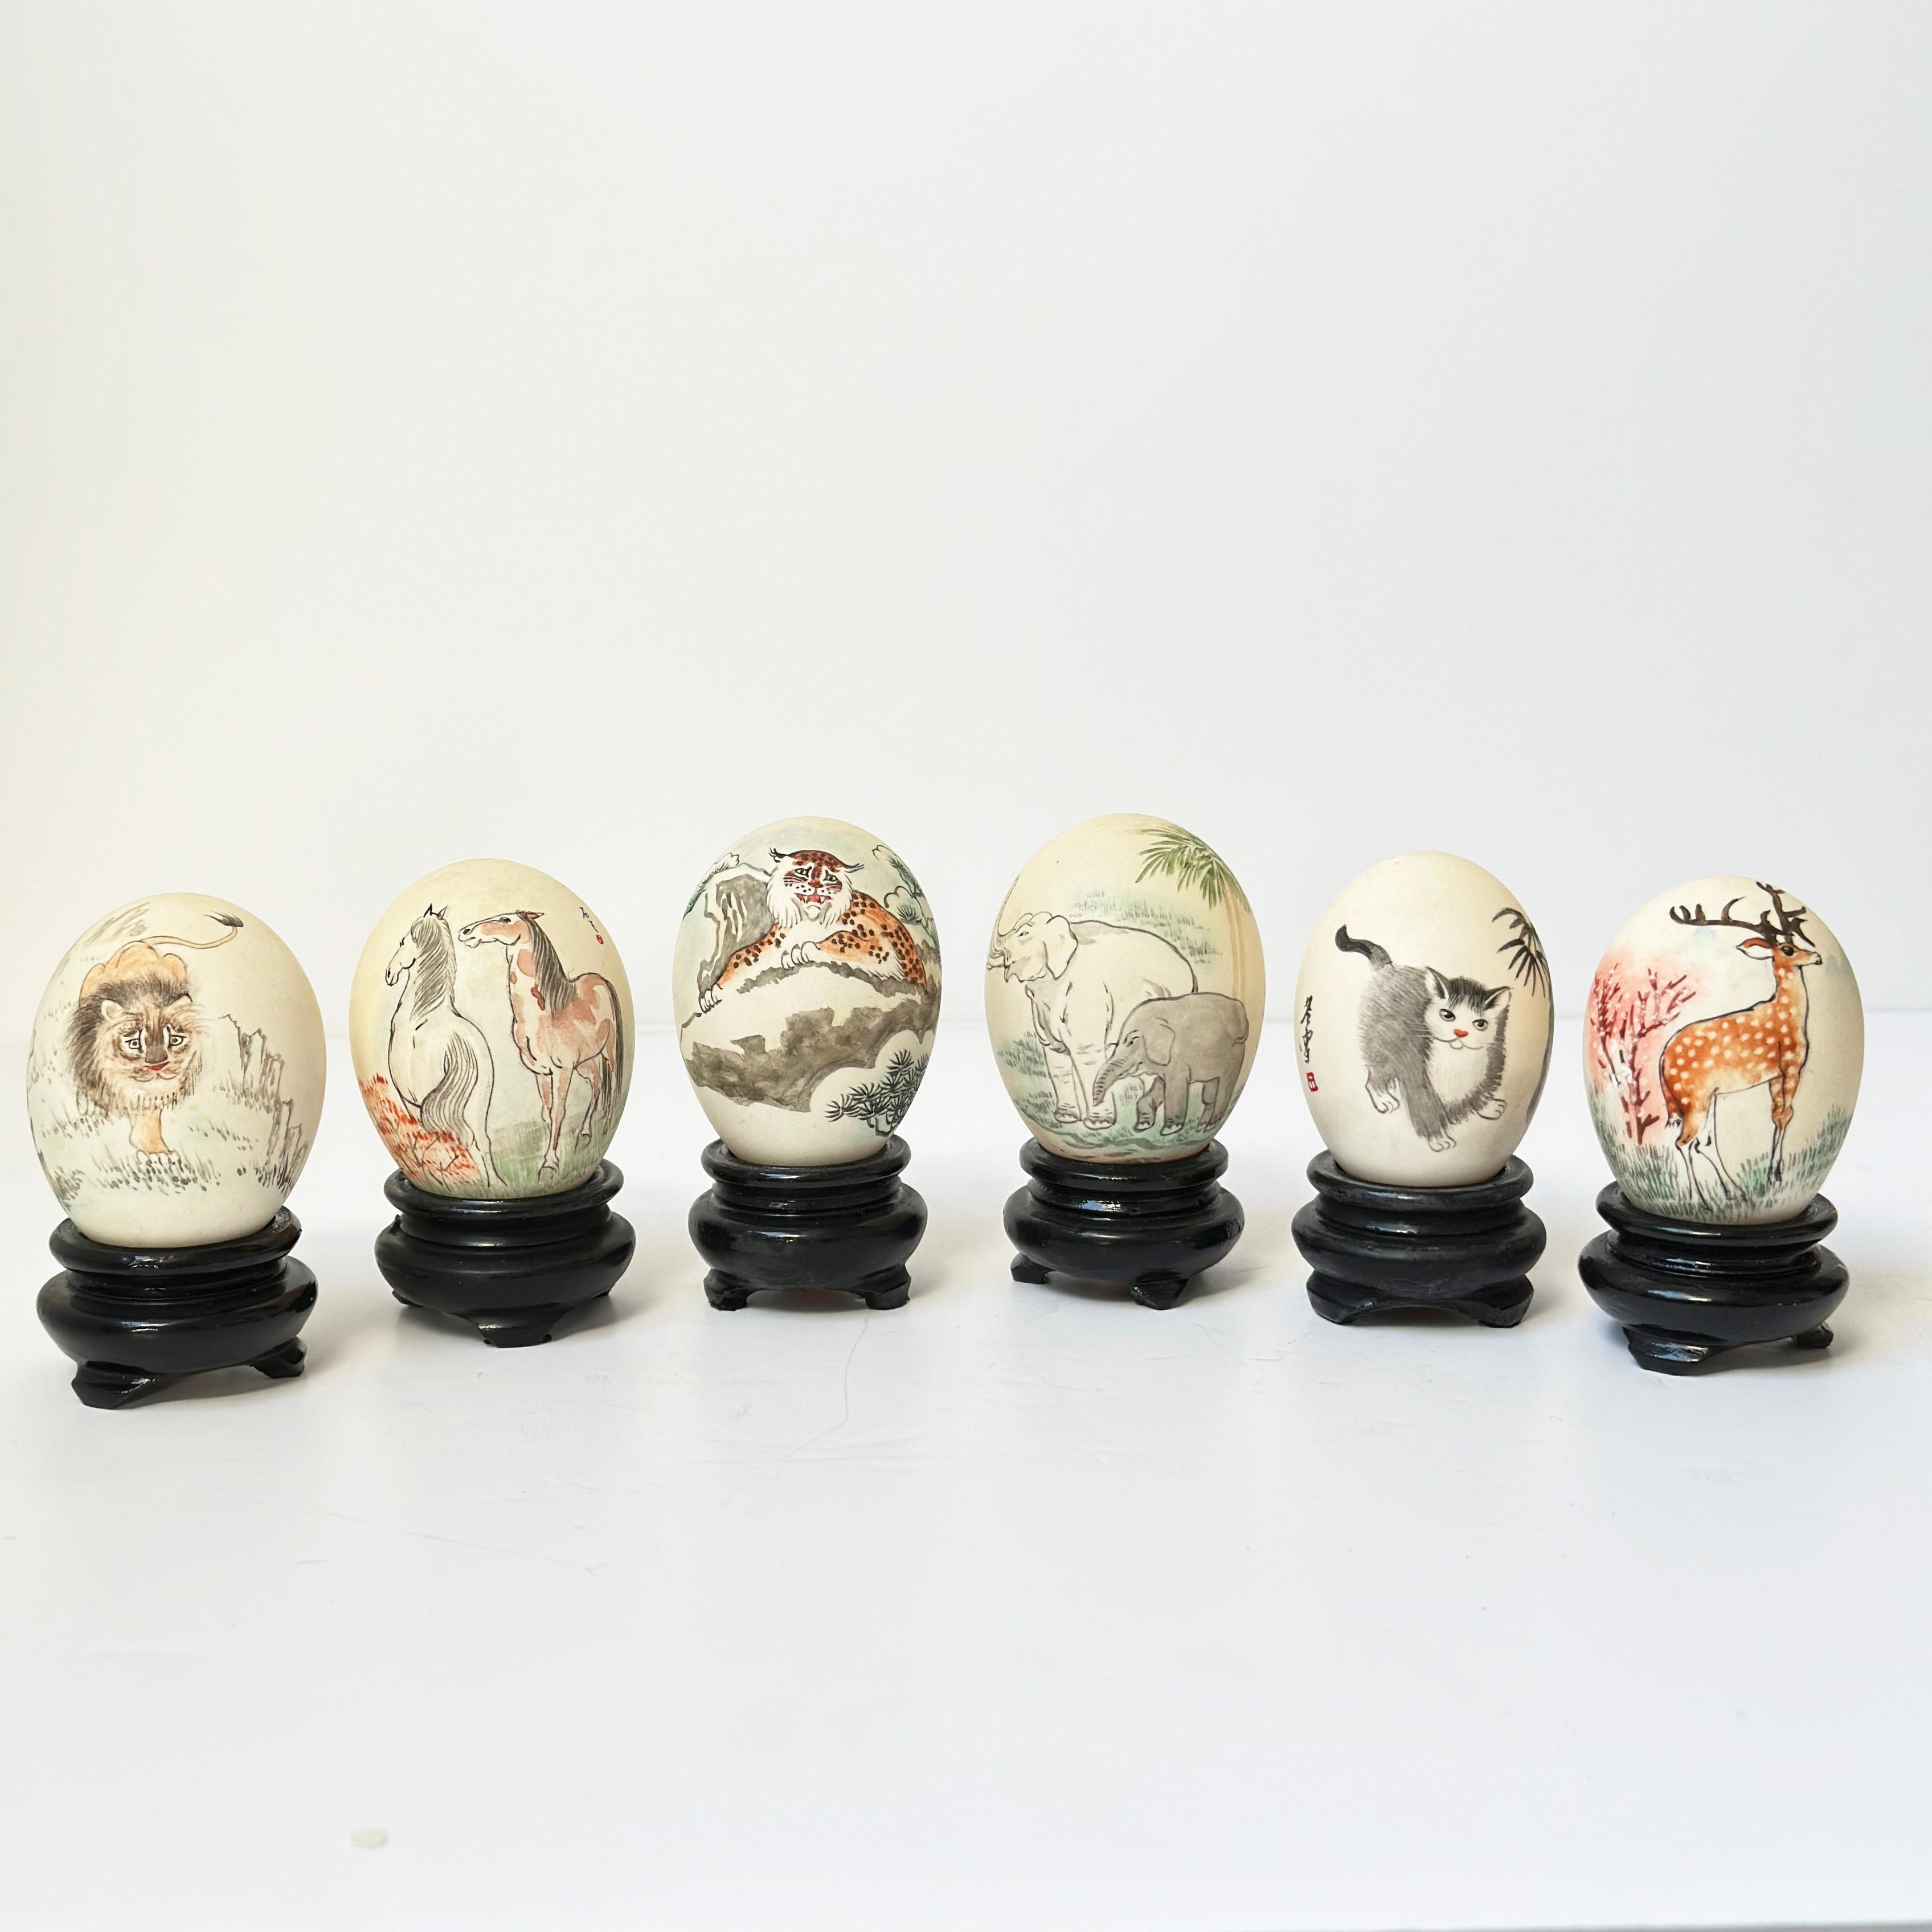 Œufs peints chinois vintage : cette collection présente une sélection de coquilles d'œufs peintes à la main, chacune étant mise en valeur sur un socle en bois sculpté. Ces pièces ont été fabriquées par des artistes spécialisés dans les coquilles